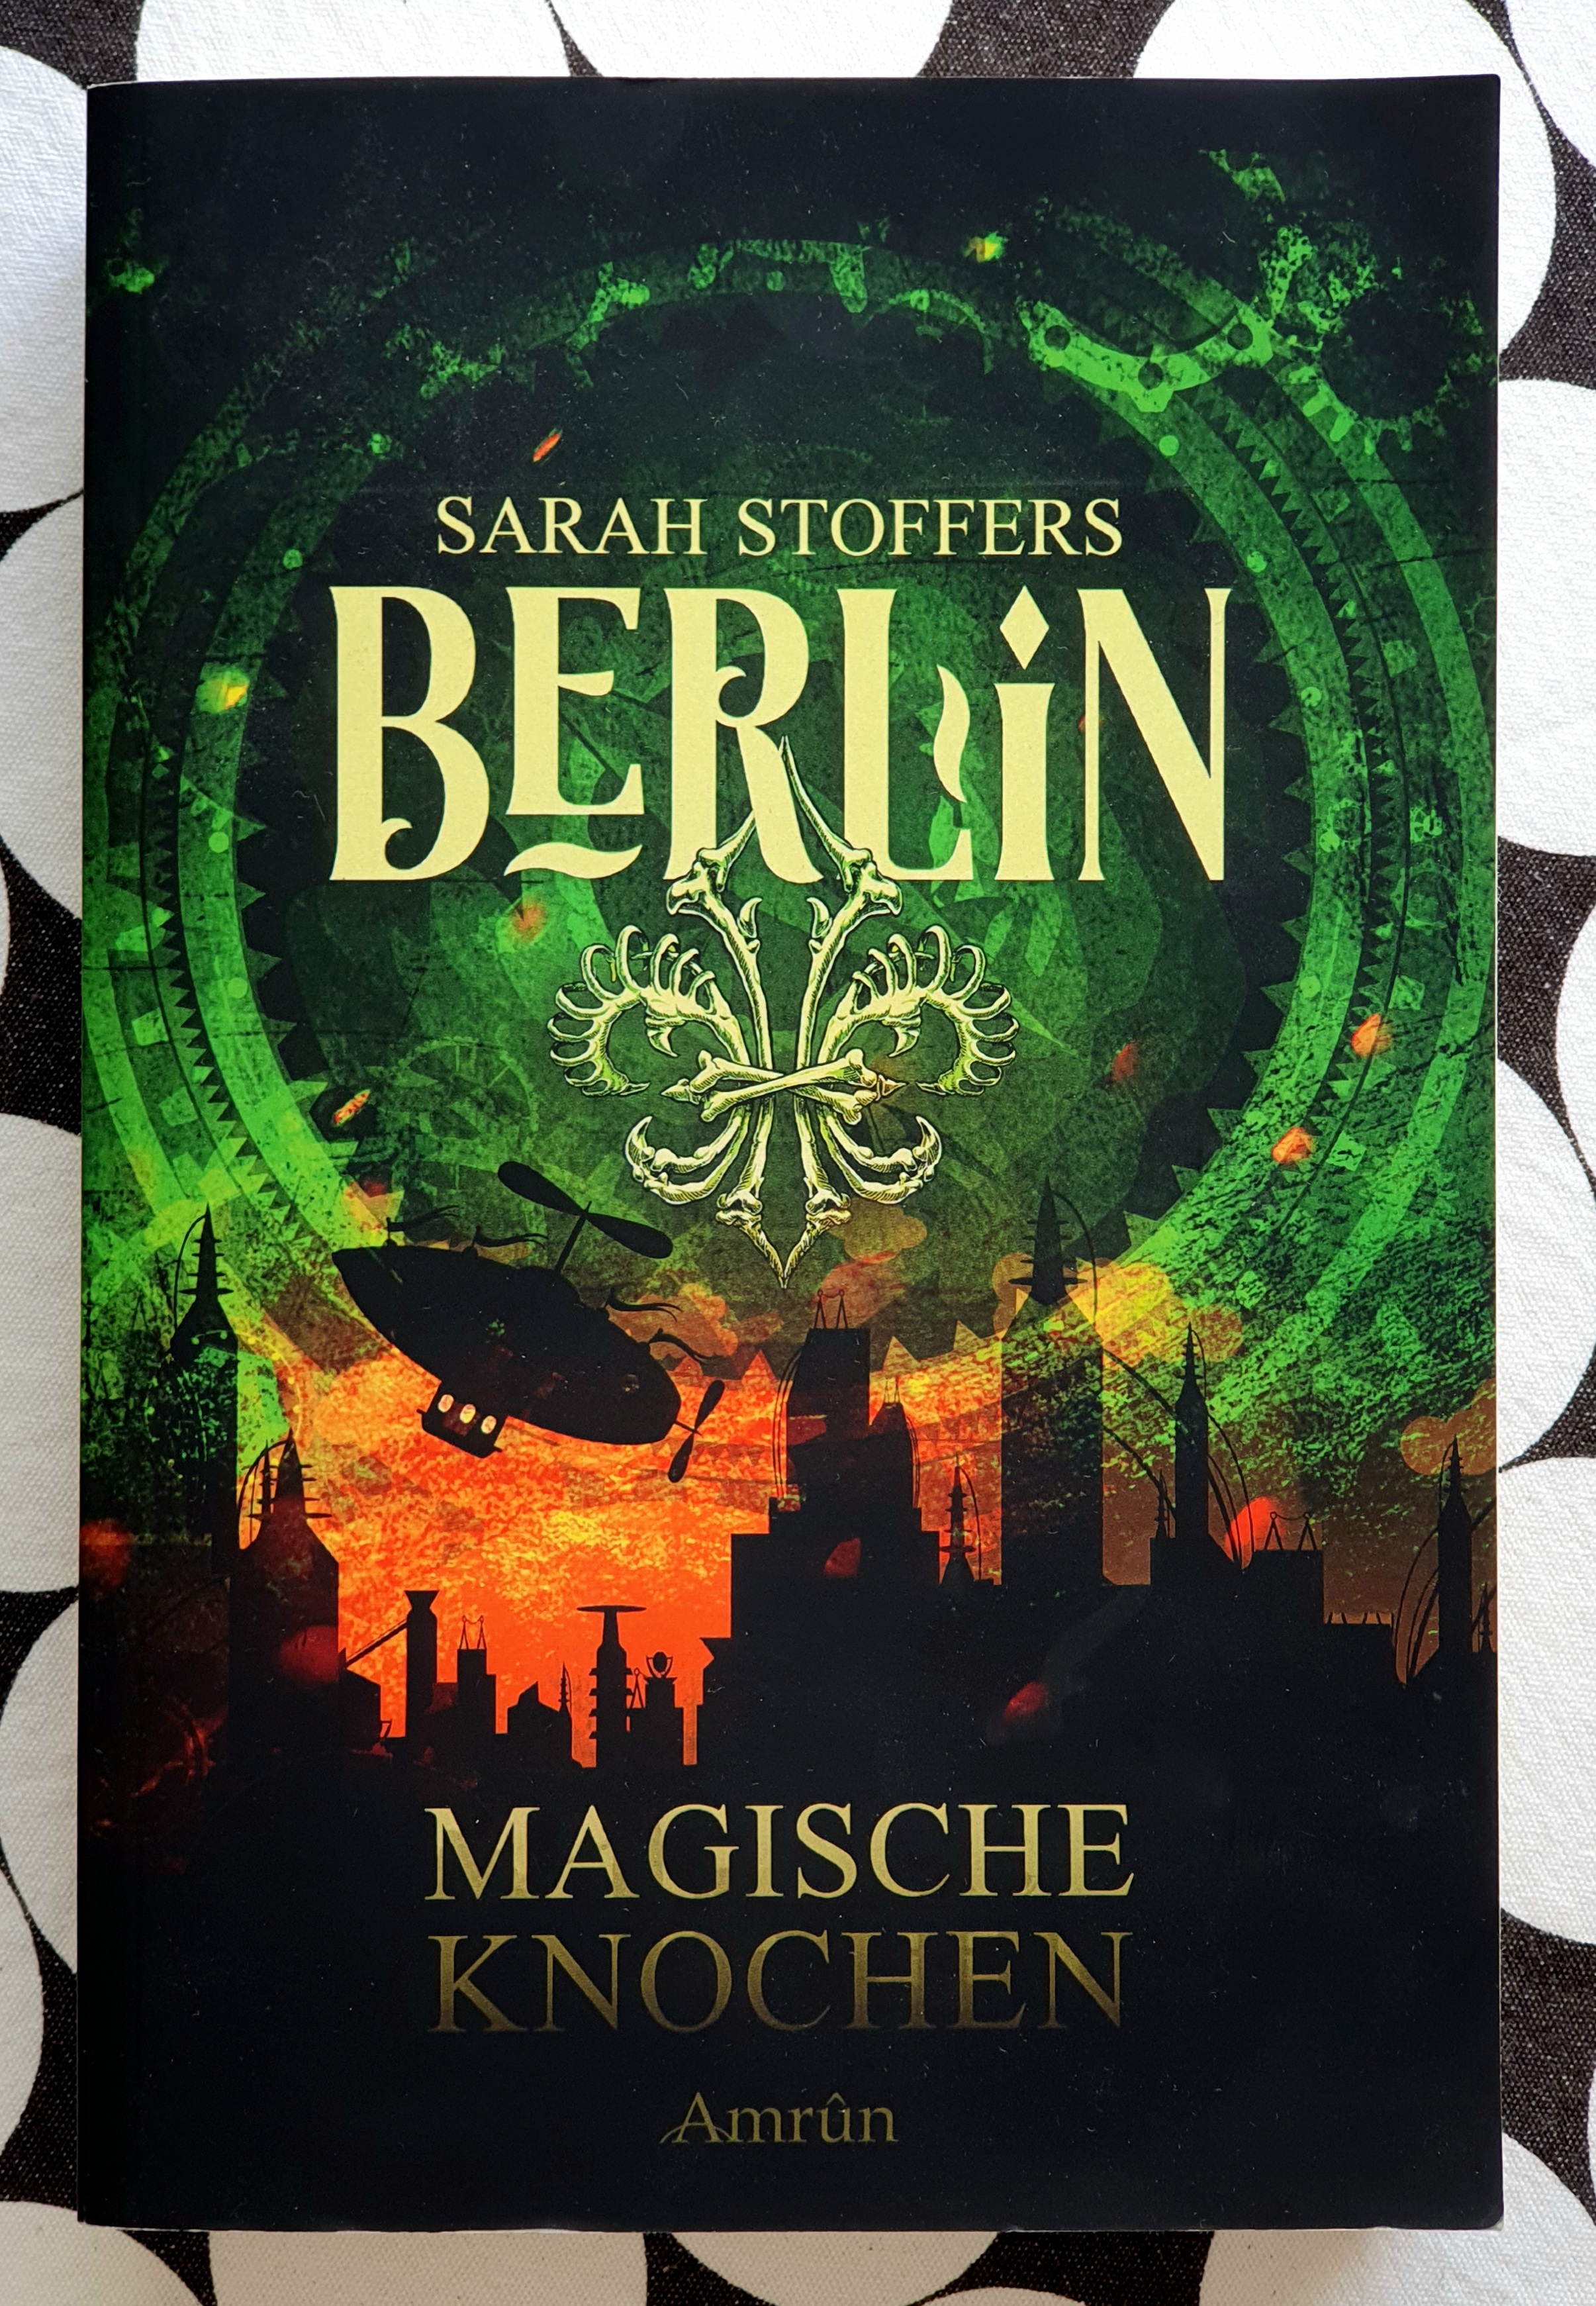 Foto des Einbandes von 'Berlin - Magische Knochen'. Unten eine schwarze Skyline einer Stadt mit vielen Türmen, darauf der Titel und der Verlag Amrun. Das Wort Berlin und der Name Sarah Stoffers stehen vor dem grün schimmernden Himmel an dem ein Zeppelin fliegt.